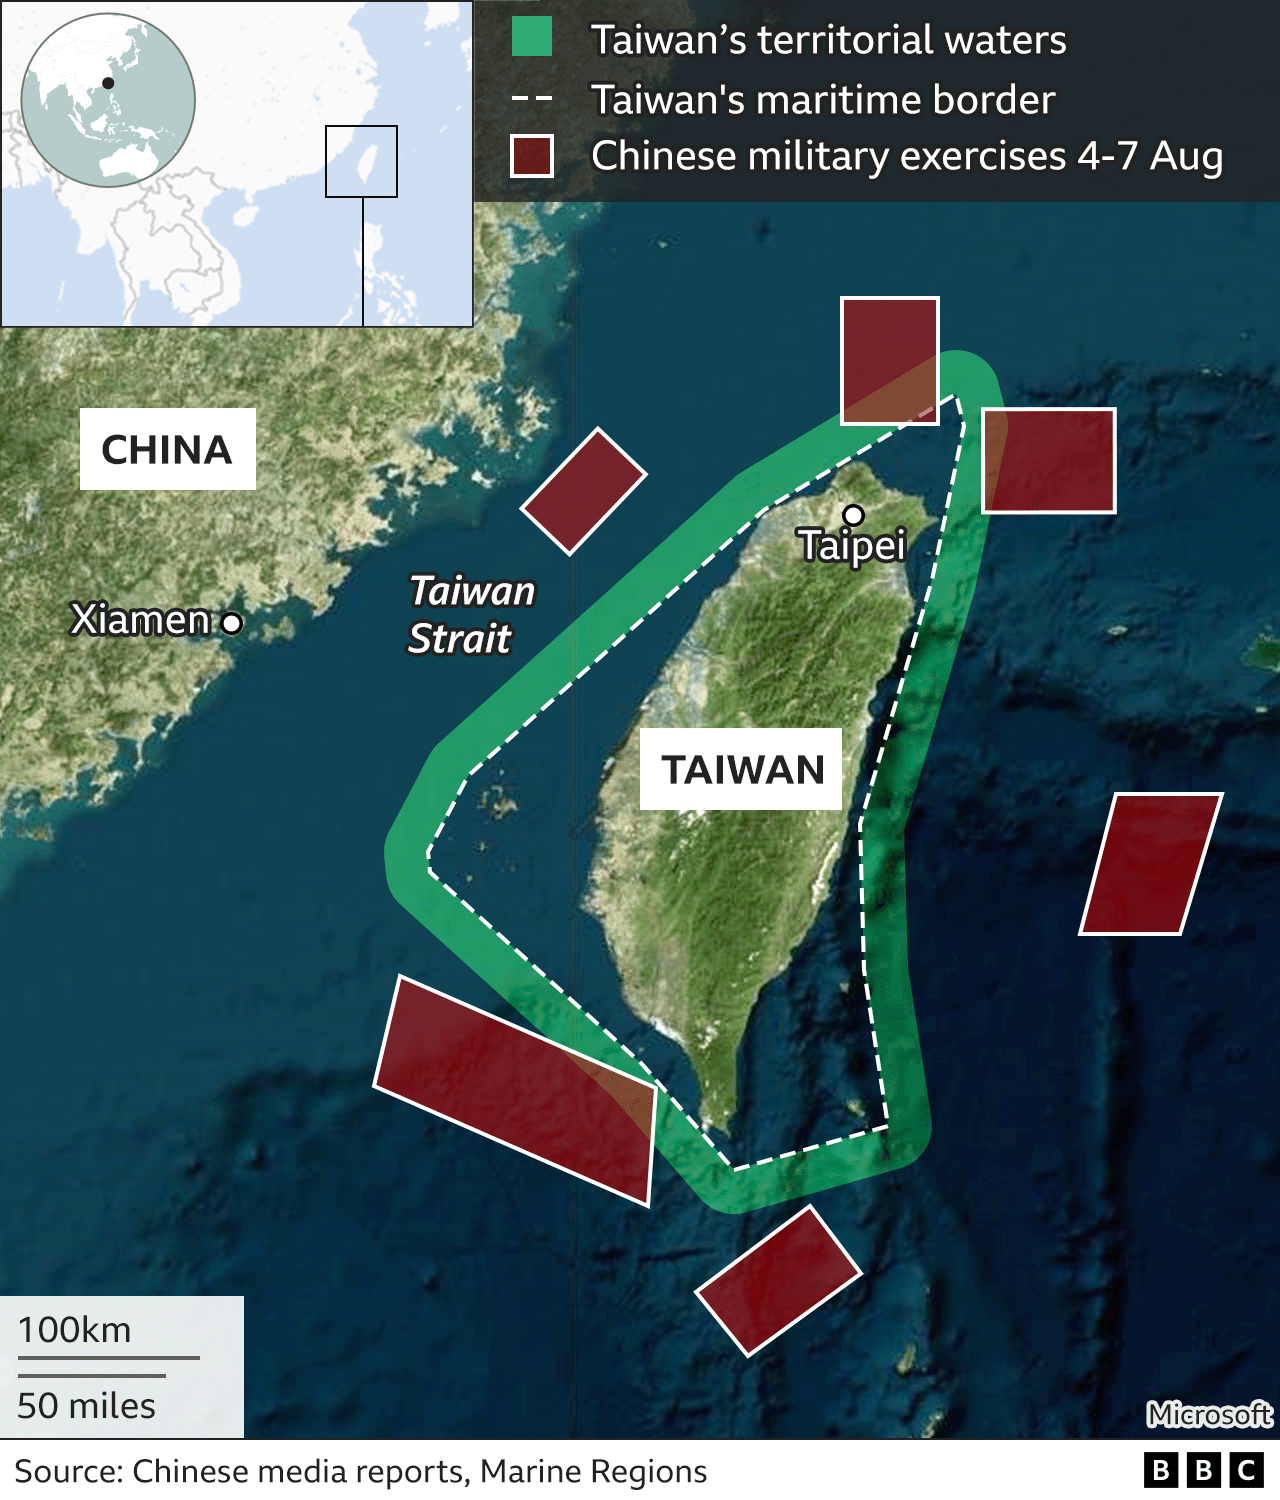 Chính phủ Đài Loan đã quyết tâm giải quyết mối quan hệ thăng trầm với Trung Quốc thông qua đối thoại, và những nỗ lực đó sẽ được chứng kiến trong tương lai gần. Hãy xem hình ảnh để cùng nhau đón đợi một tương lai yên bình và thịnh vượng.